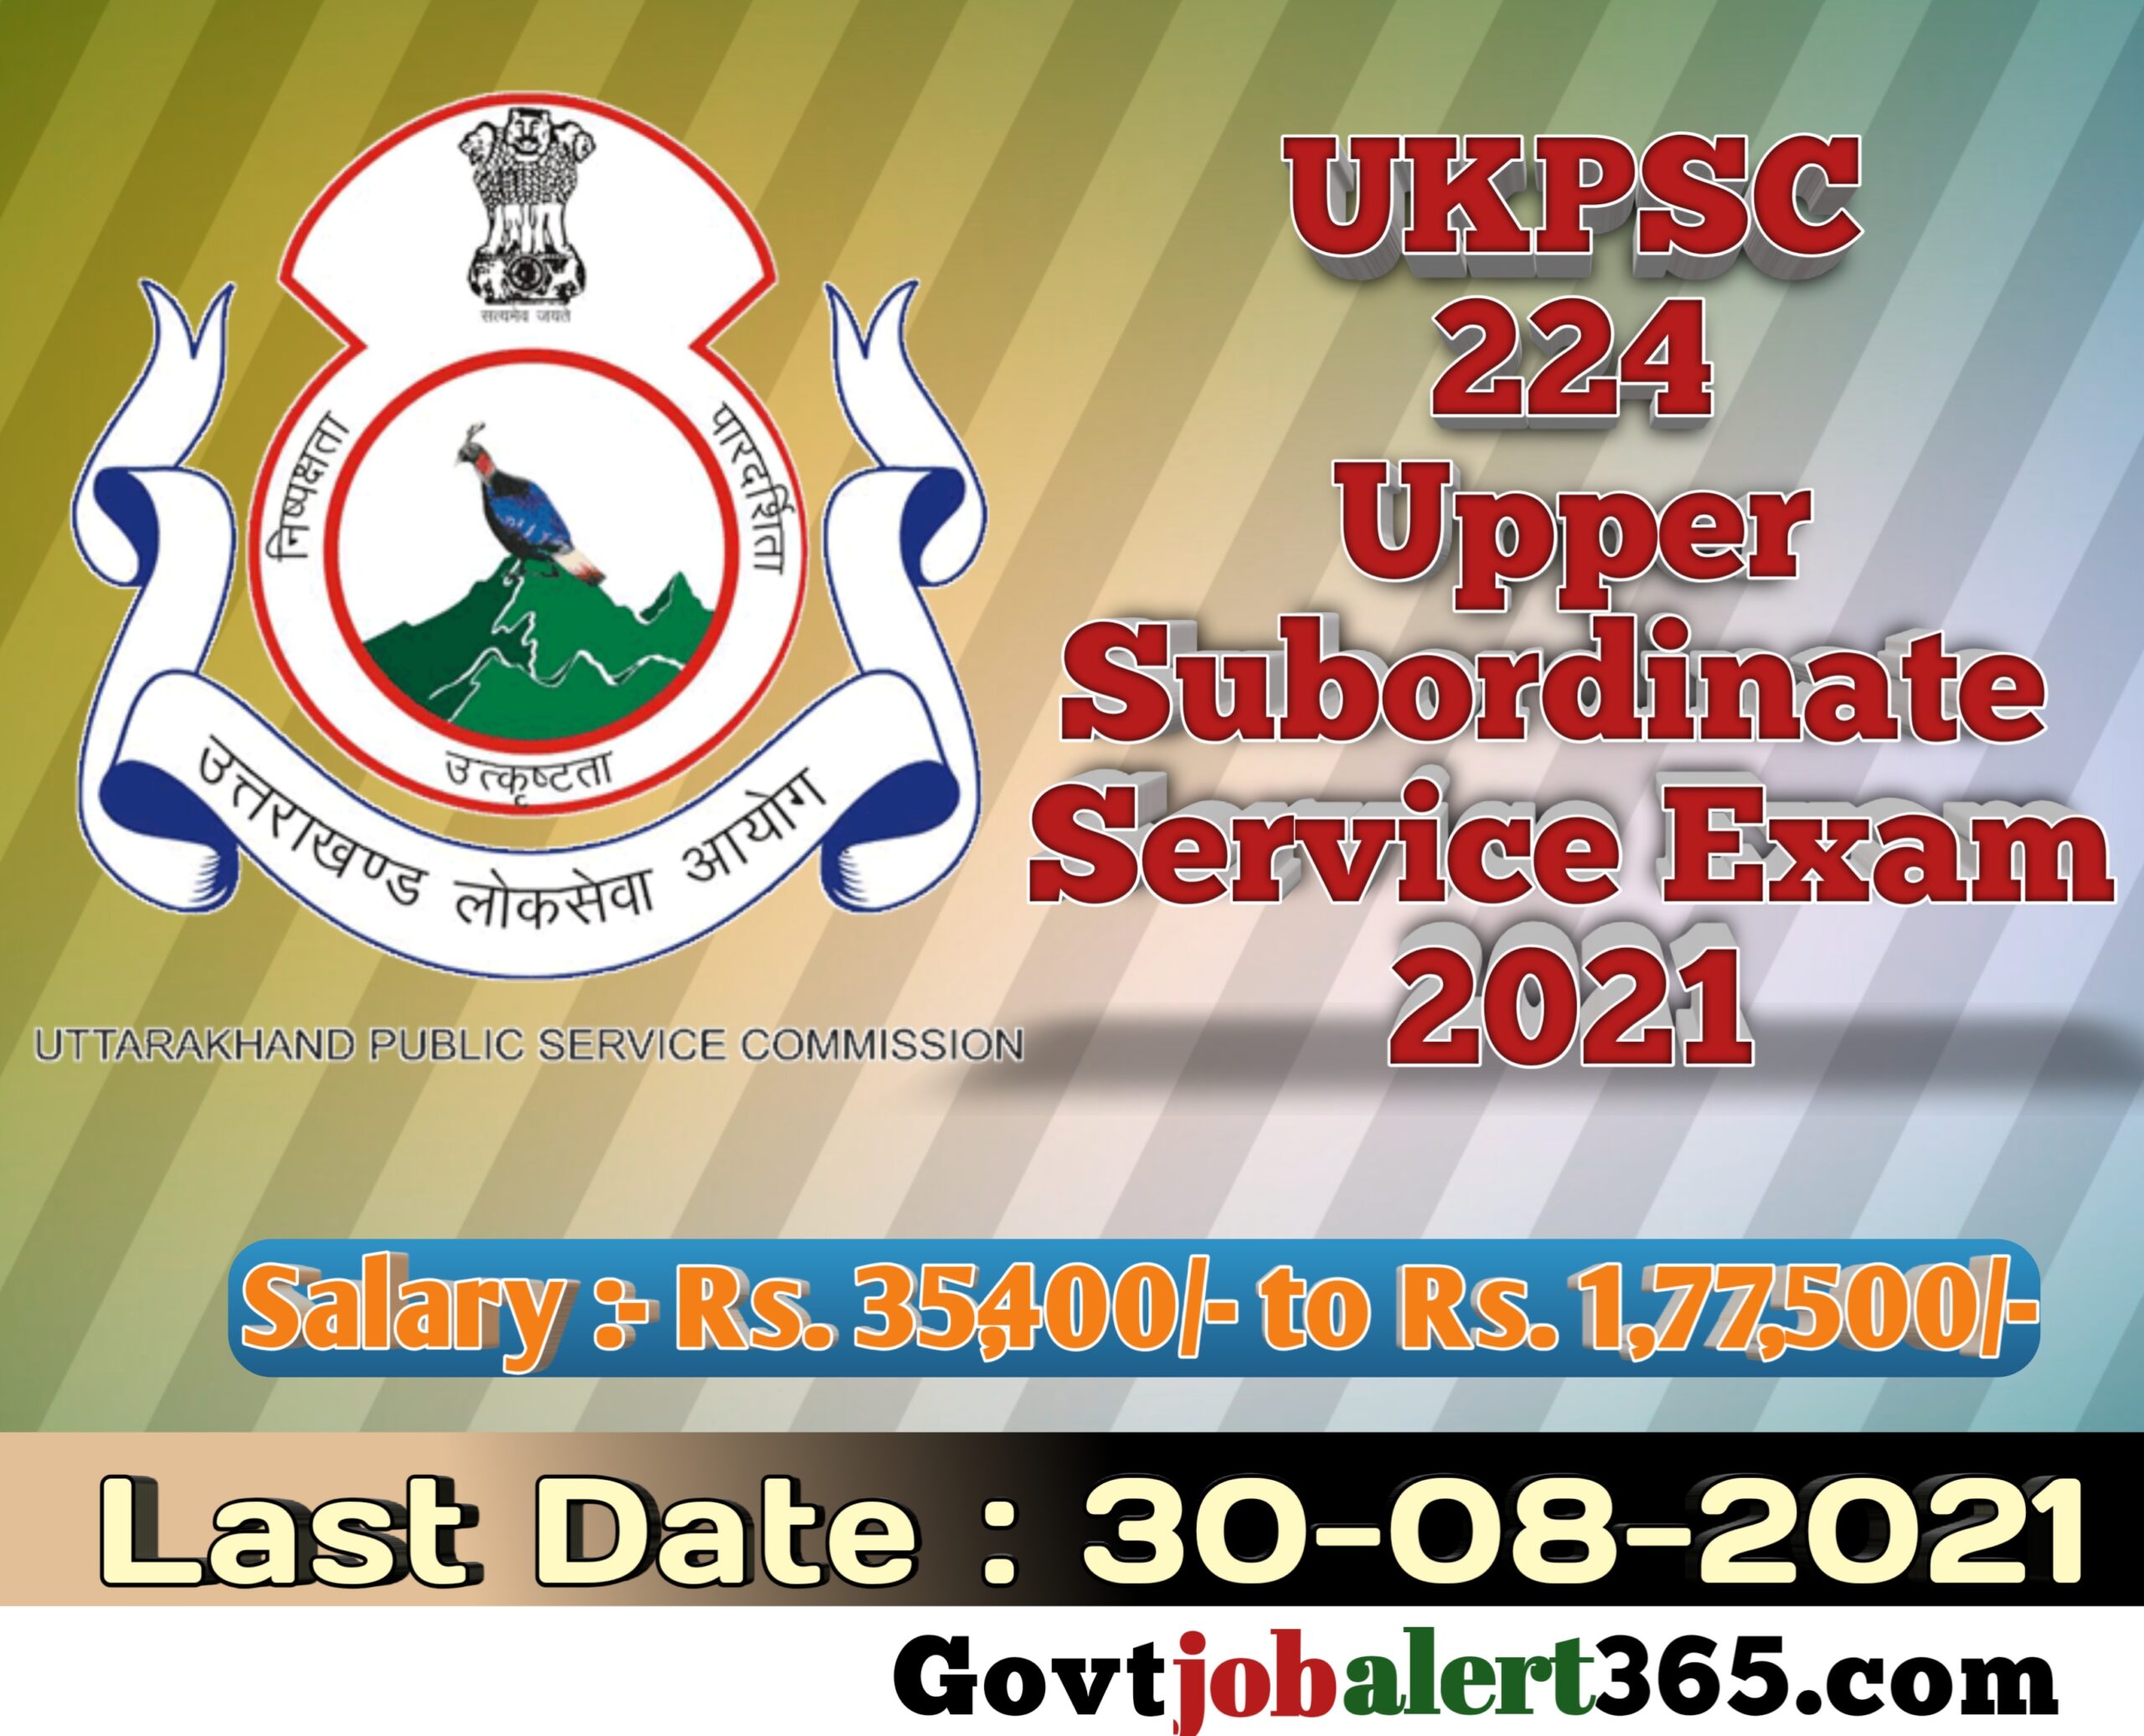 Uttarakhand Public Service Commission Combined Subordinate Service Exam 2021